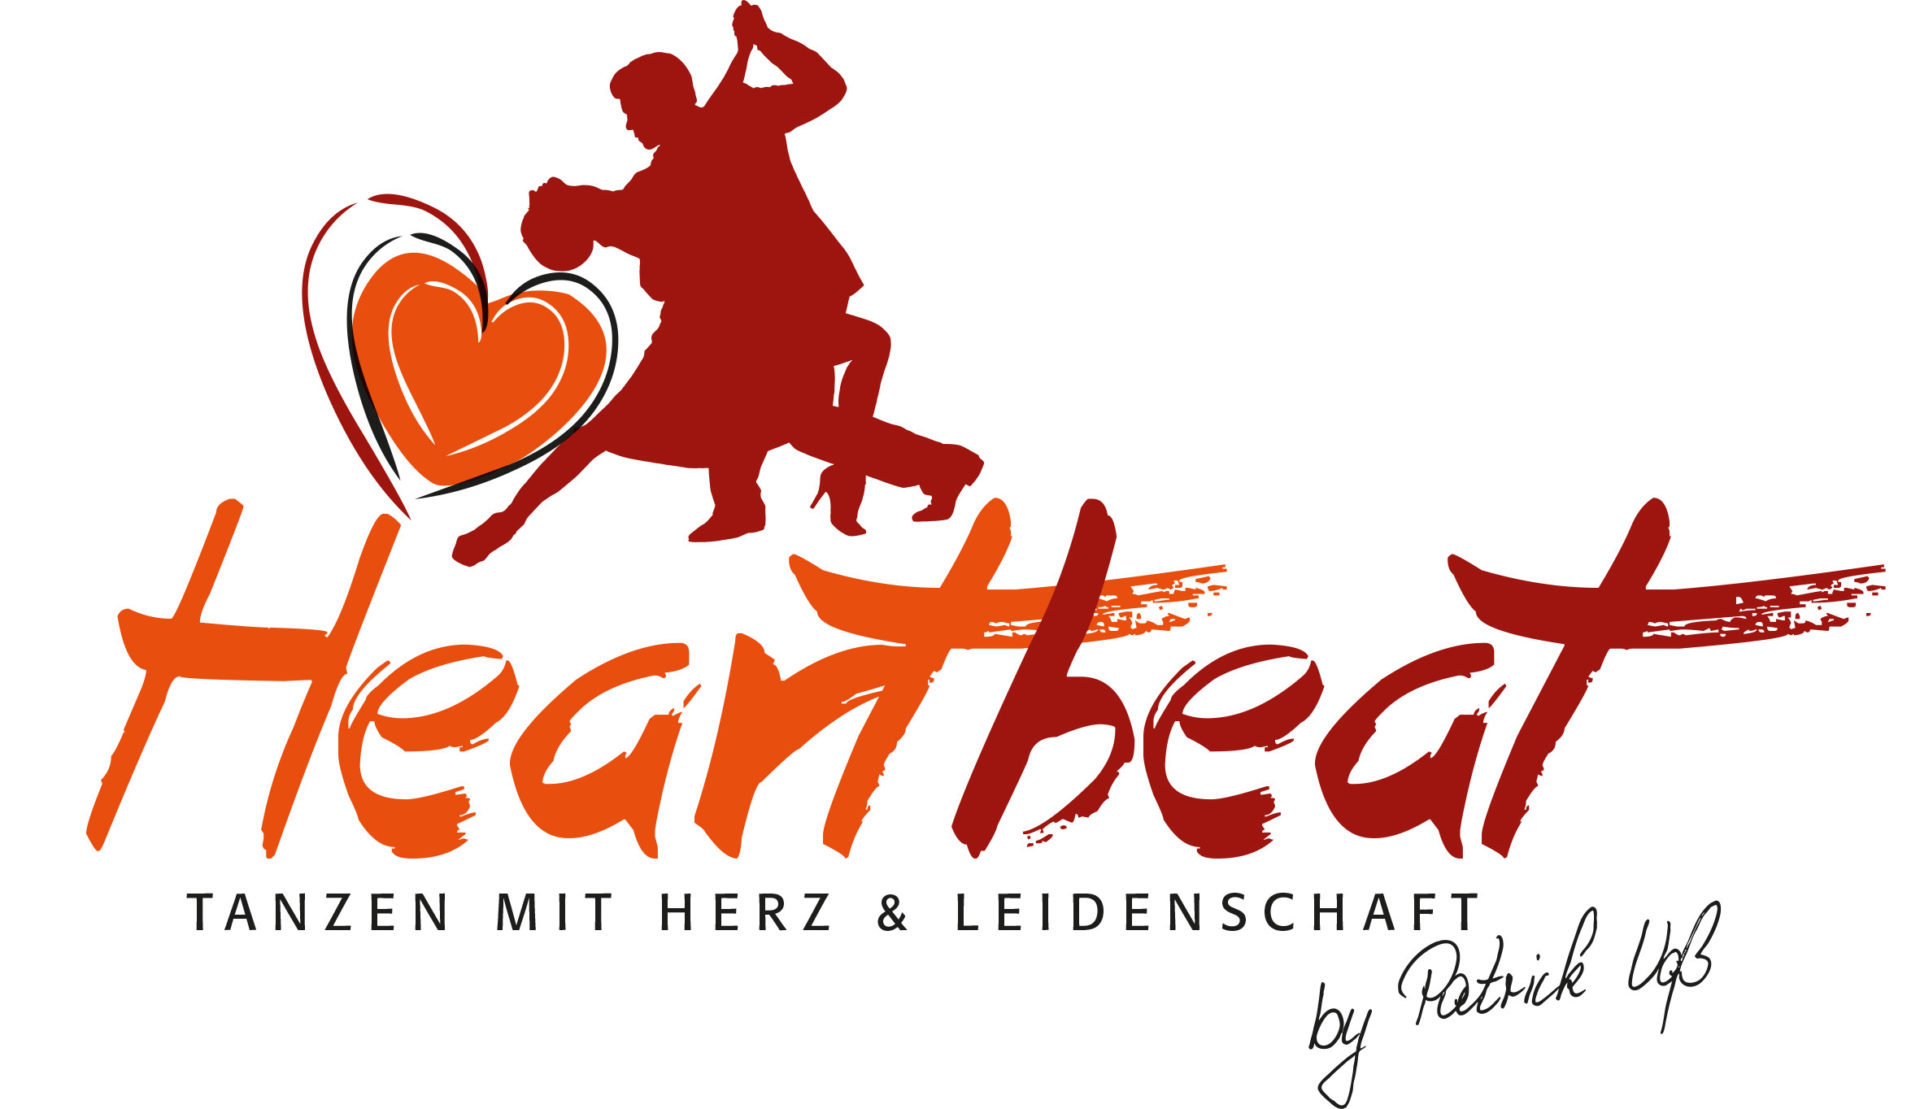 Heartbeat Tanzschule